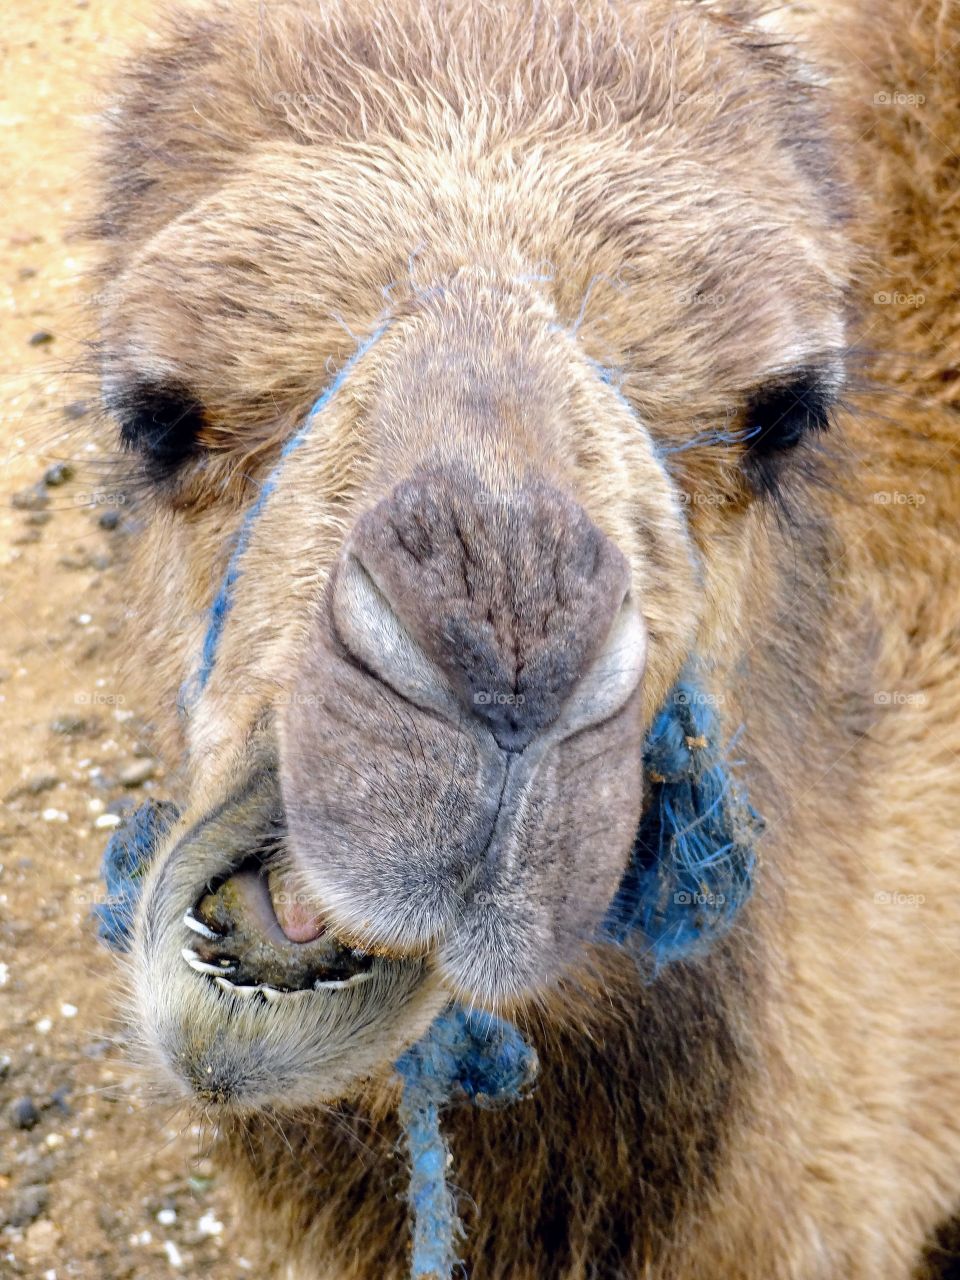 Camel in Morocco 